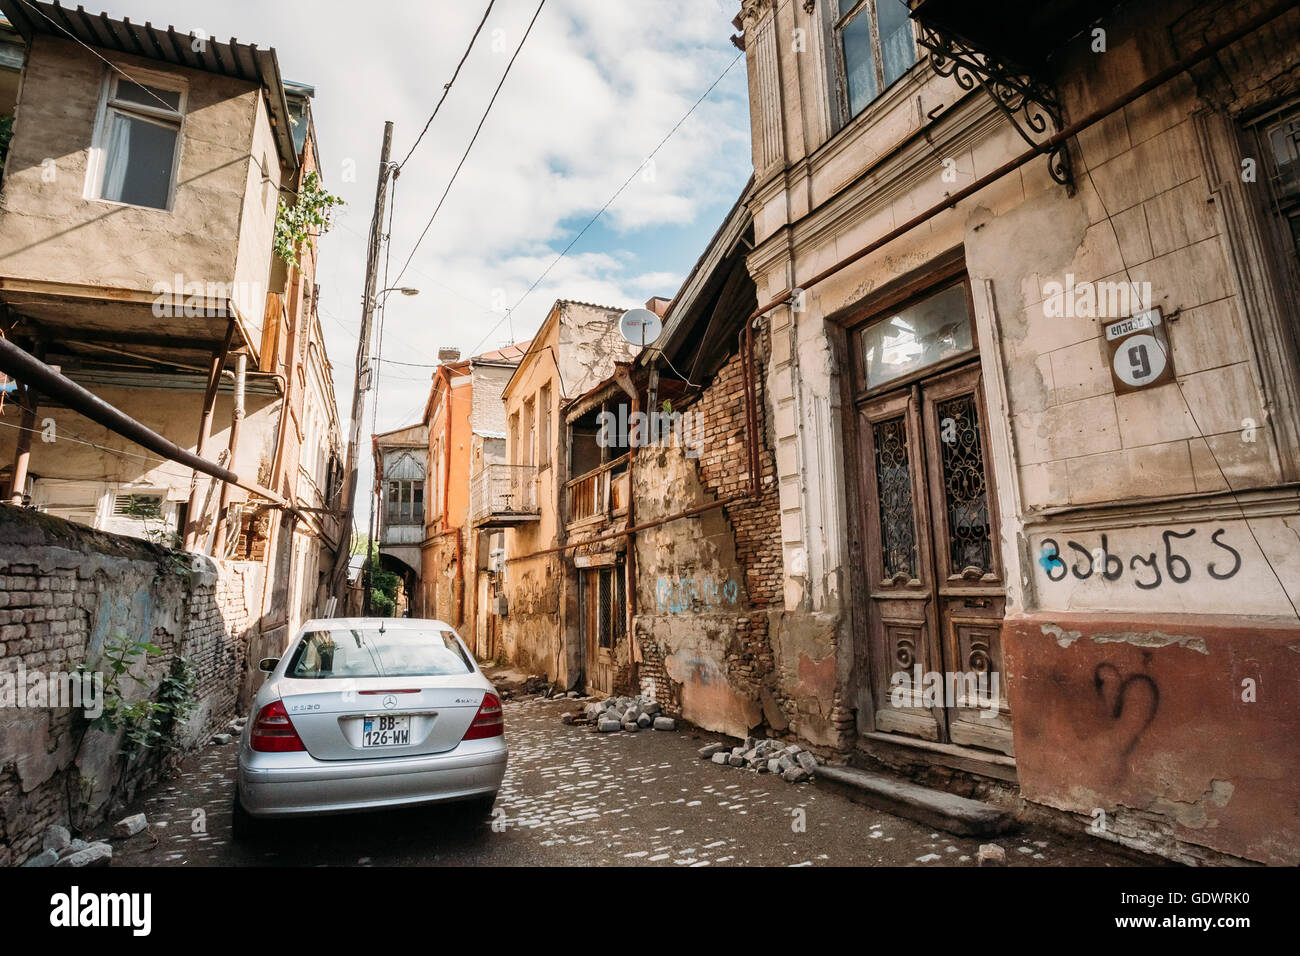 Tbilisi, Georgien - 19. Mai 2016: Automarke Mercedes-Benz E 320 ist auf einer schmalen Straße in der Altstadt von Tiflis geparkt Stockfoto